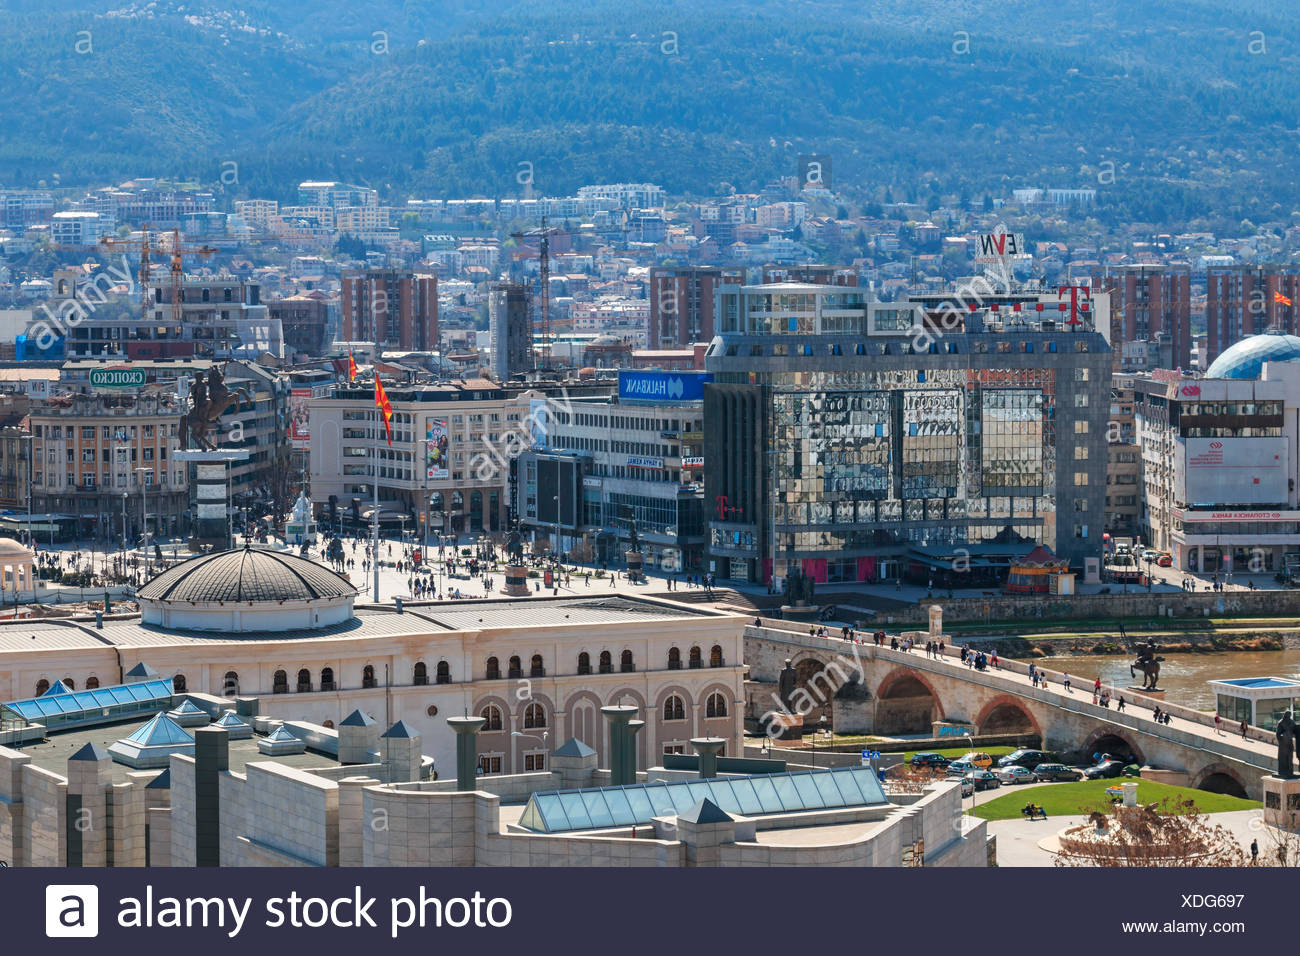 Makedonia Stockfotos Und Bilder Kaufen Alamy